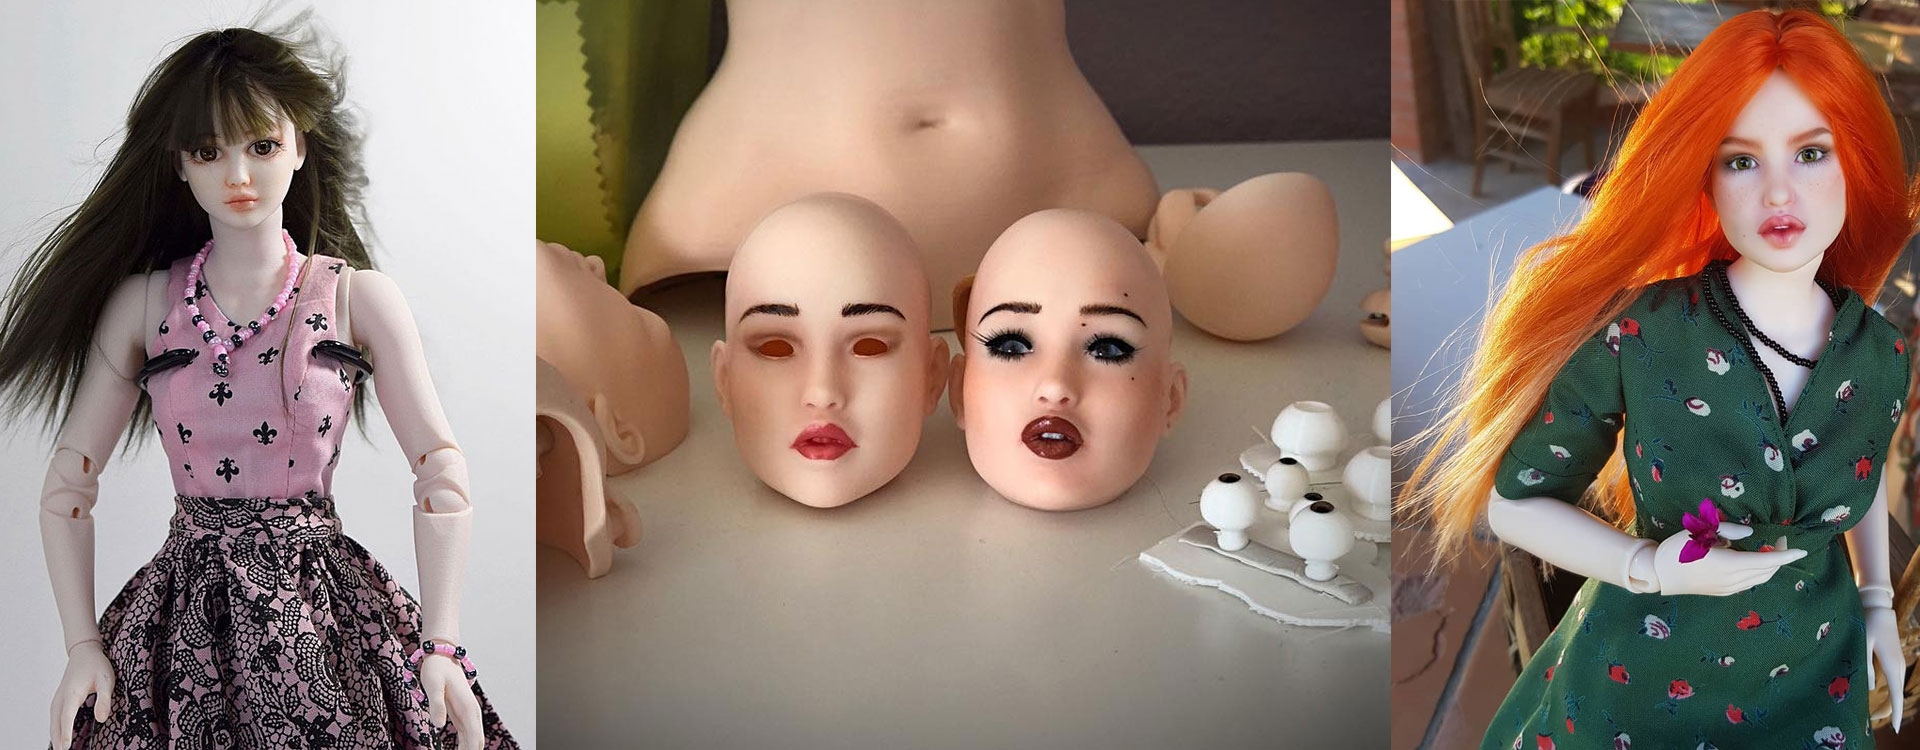 Вы не поверите, что эти куклы напечатаны на 3D-принтере.